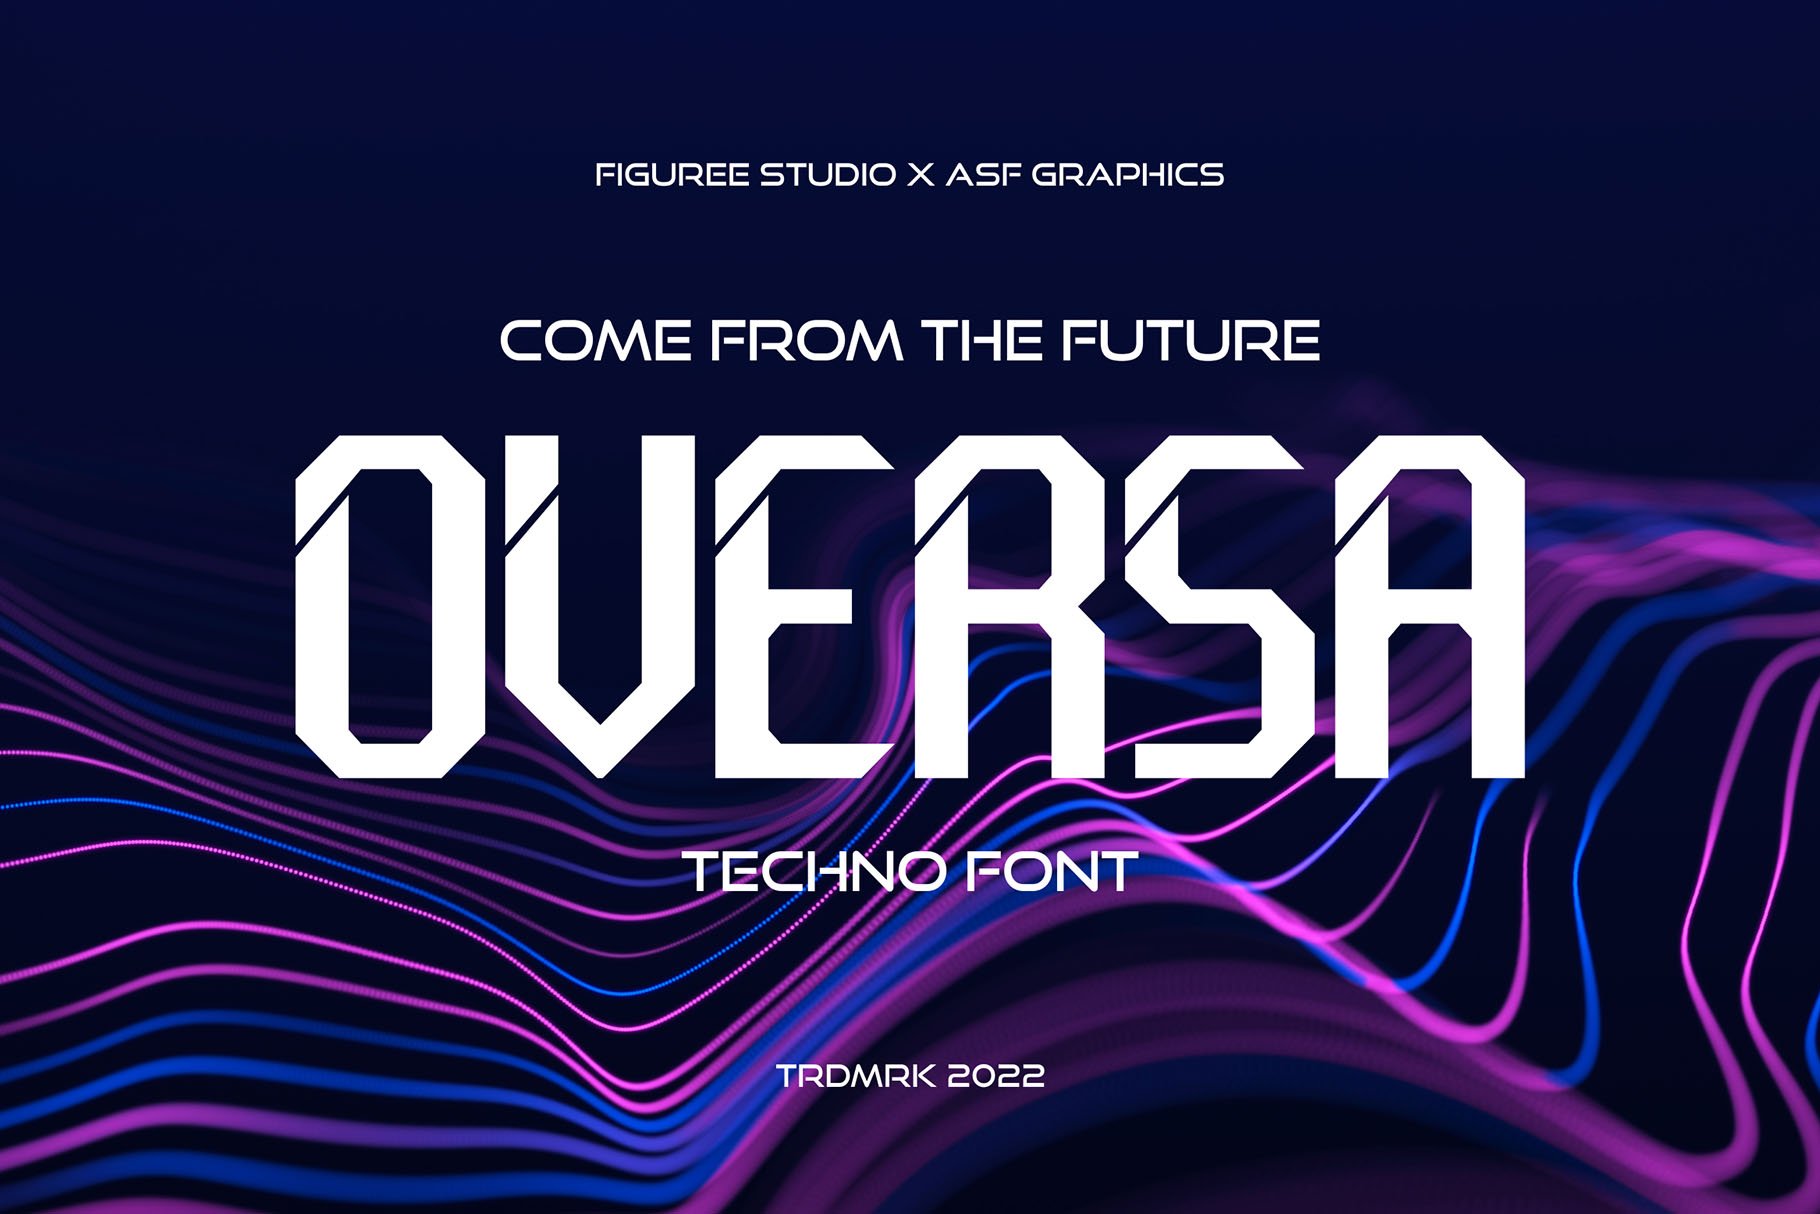 Oversa - Futuristic Font cover image.